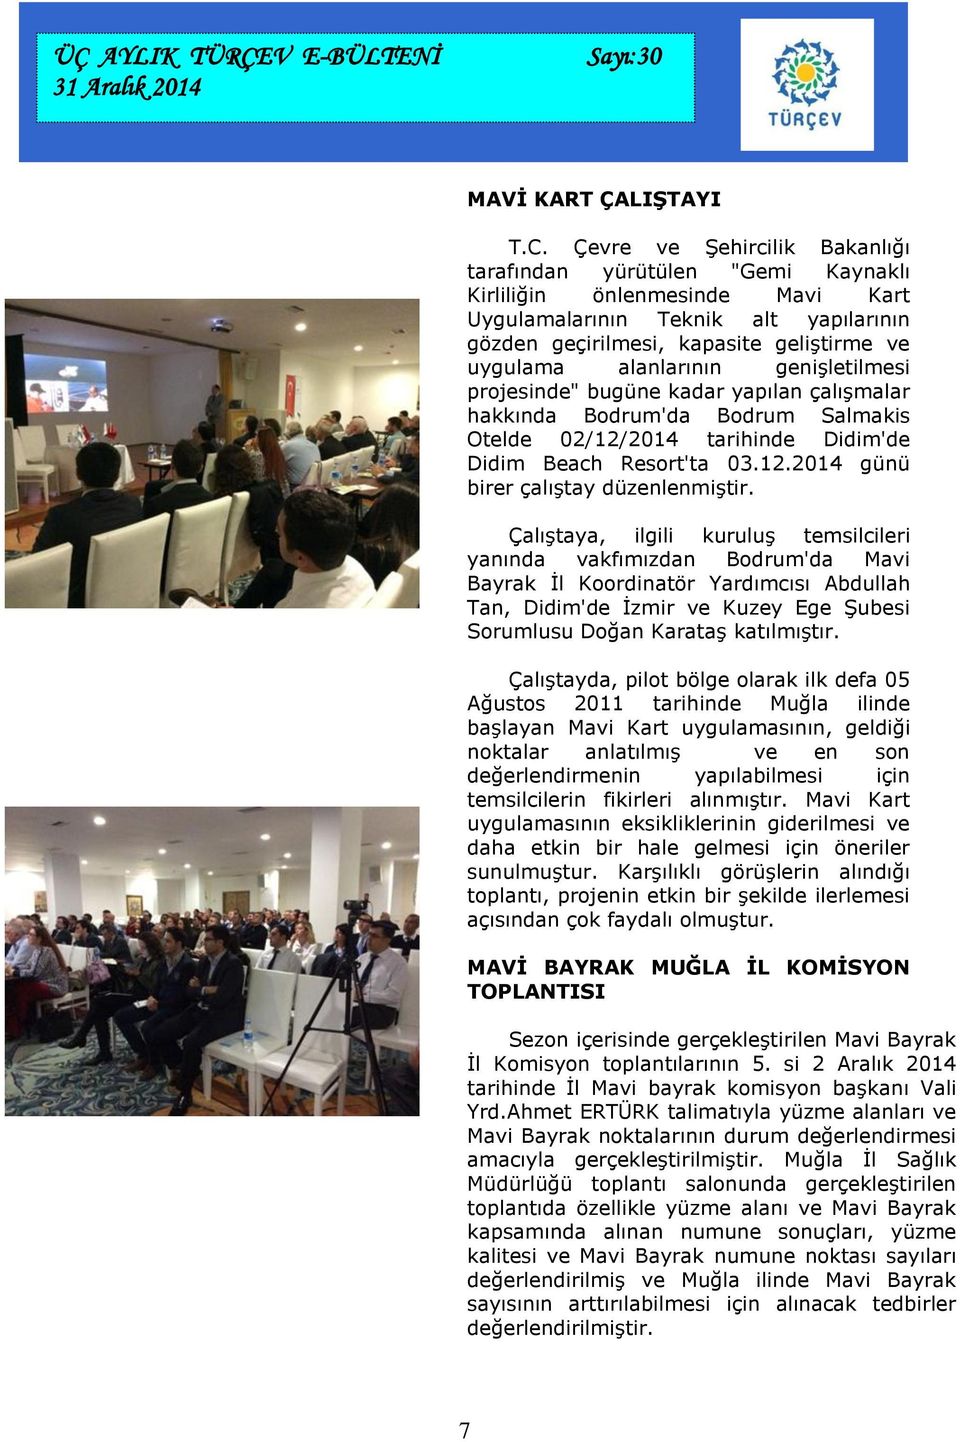 alanlarının genişletilmesi projesinde" bugüne kadar yapılan çalışmalar hakkında Bodrum'da Bodrum Salmakis Otelde 02/12/2014 tarihinde Didim'de Didim Beach Resort'ta 03.12.2014 günü birer çalıştay düzenlenmiştir.